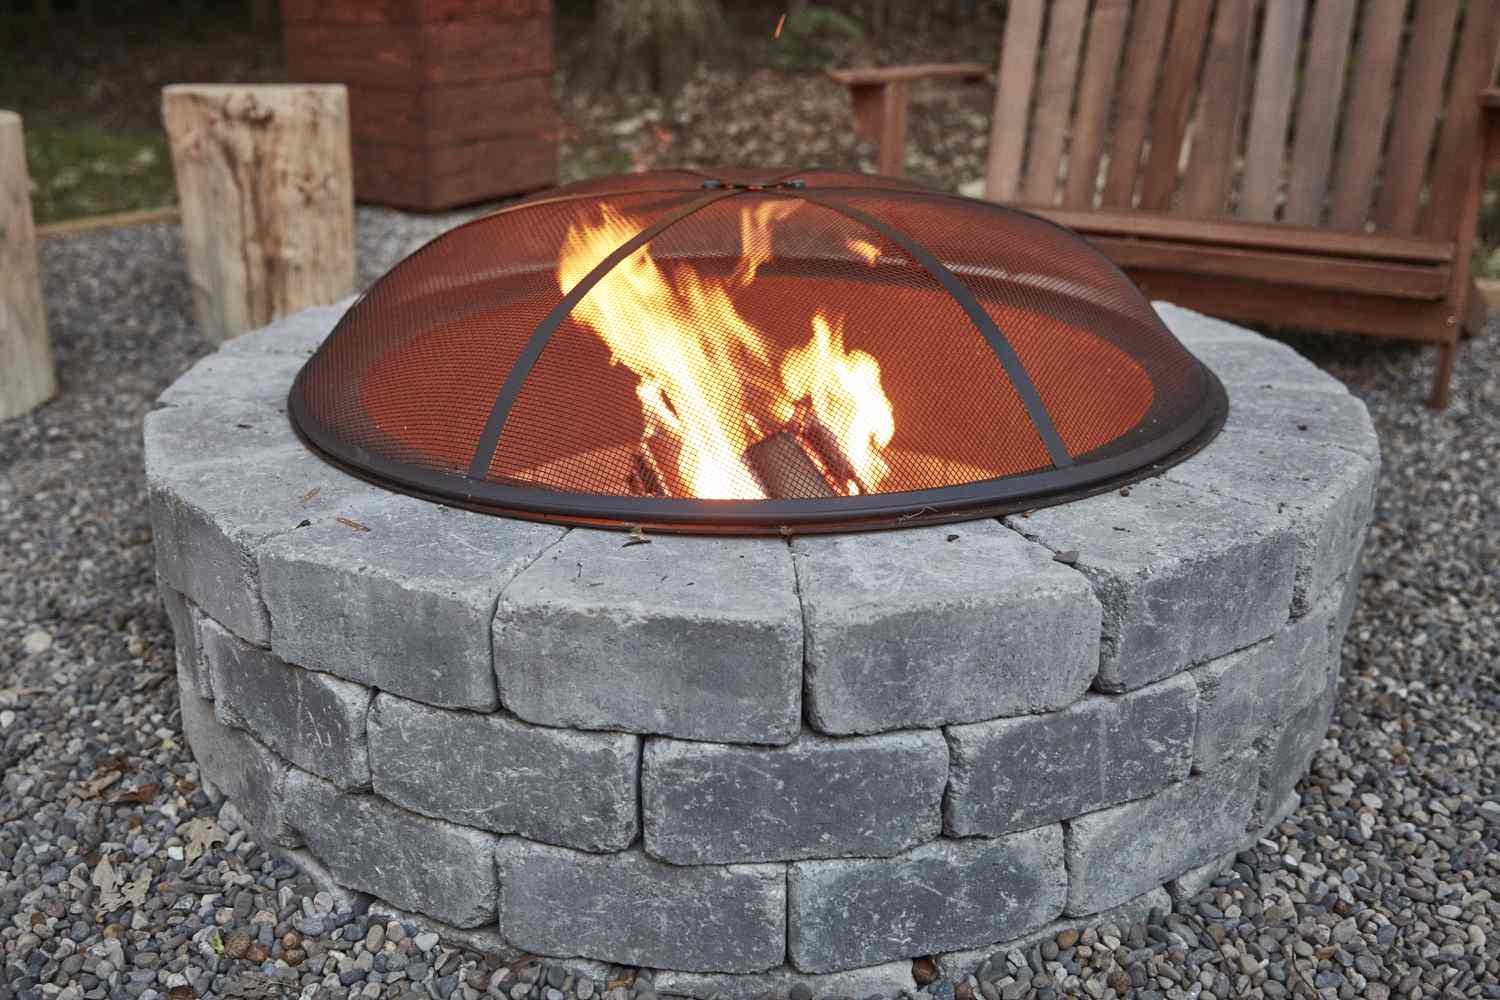 Kreisförmige Feuerstelle aus grauen Steinen mit Schutzabdeckung über dem Feuer